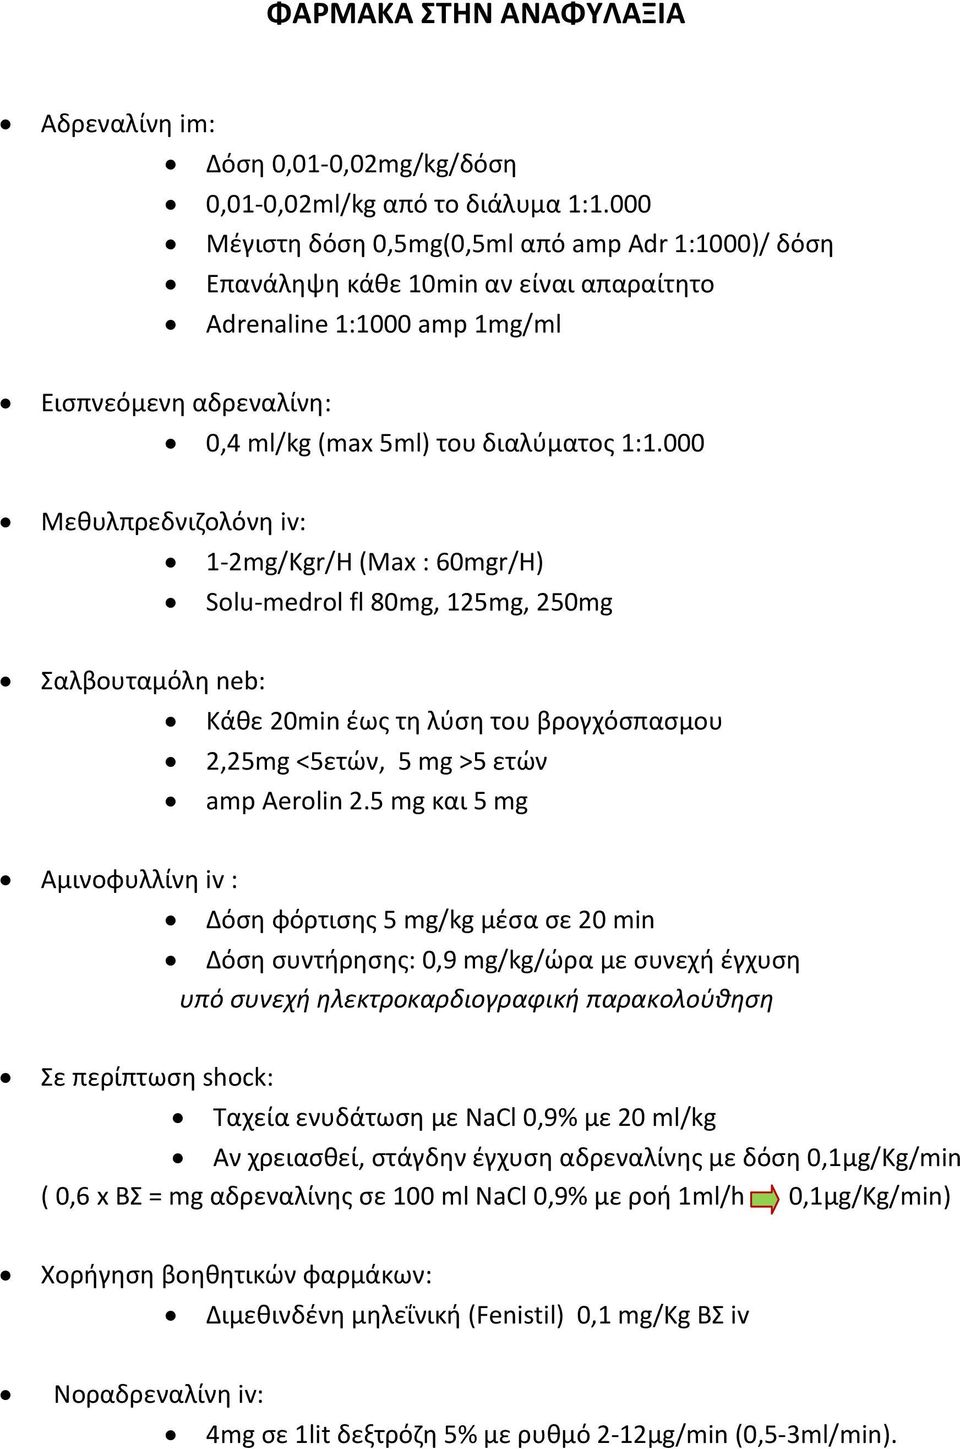 000 Μεθυλπρεδνιζολόνη iv: 1-2mg/Kgr/Η (Max : 60mgr/Η) Solu-medrol fl 80mg, 125mg, 250mg Σαλβουταμόλη neb: Κάθε 20min έως τη λύση του βρογχόσπασμου 2,25mg <5ετών, 5 mg >5 ετών amp Aerolin 2.